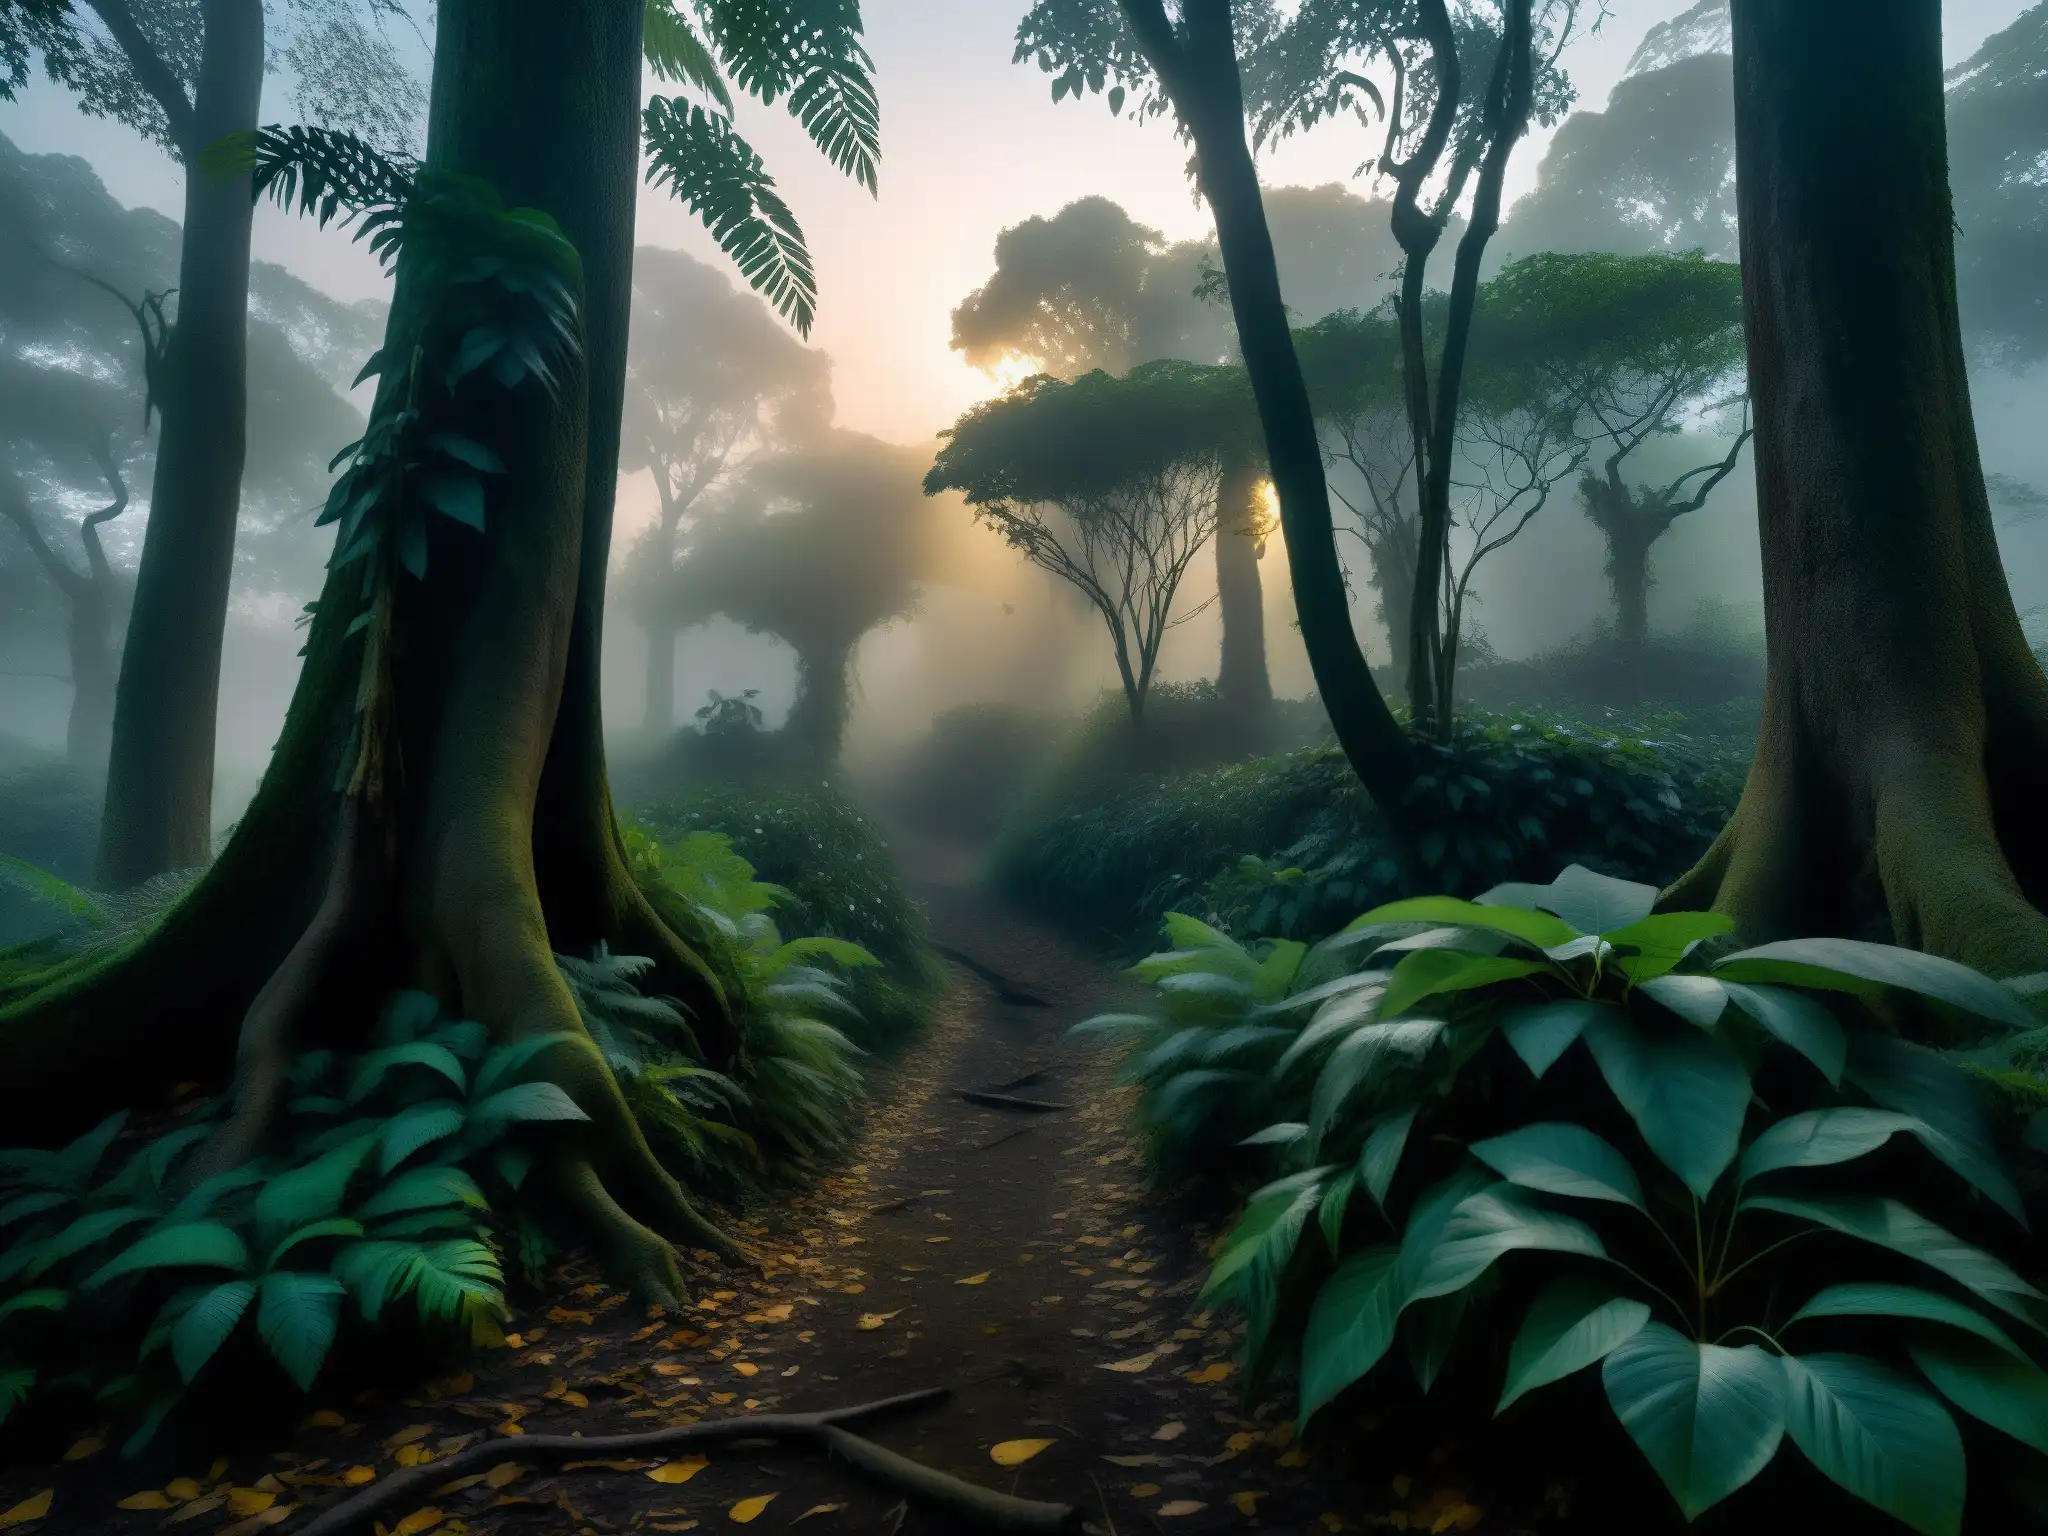 Sendero en selva misteriosa al anochecer, con árboles centenarios y atmósfera de La Mala Hora en leyendas sudamericanas